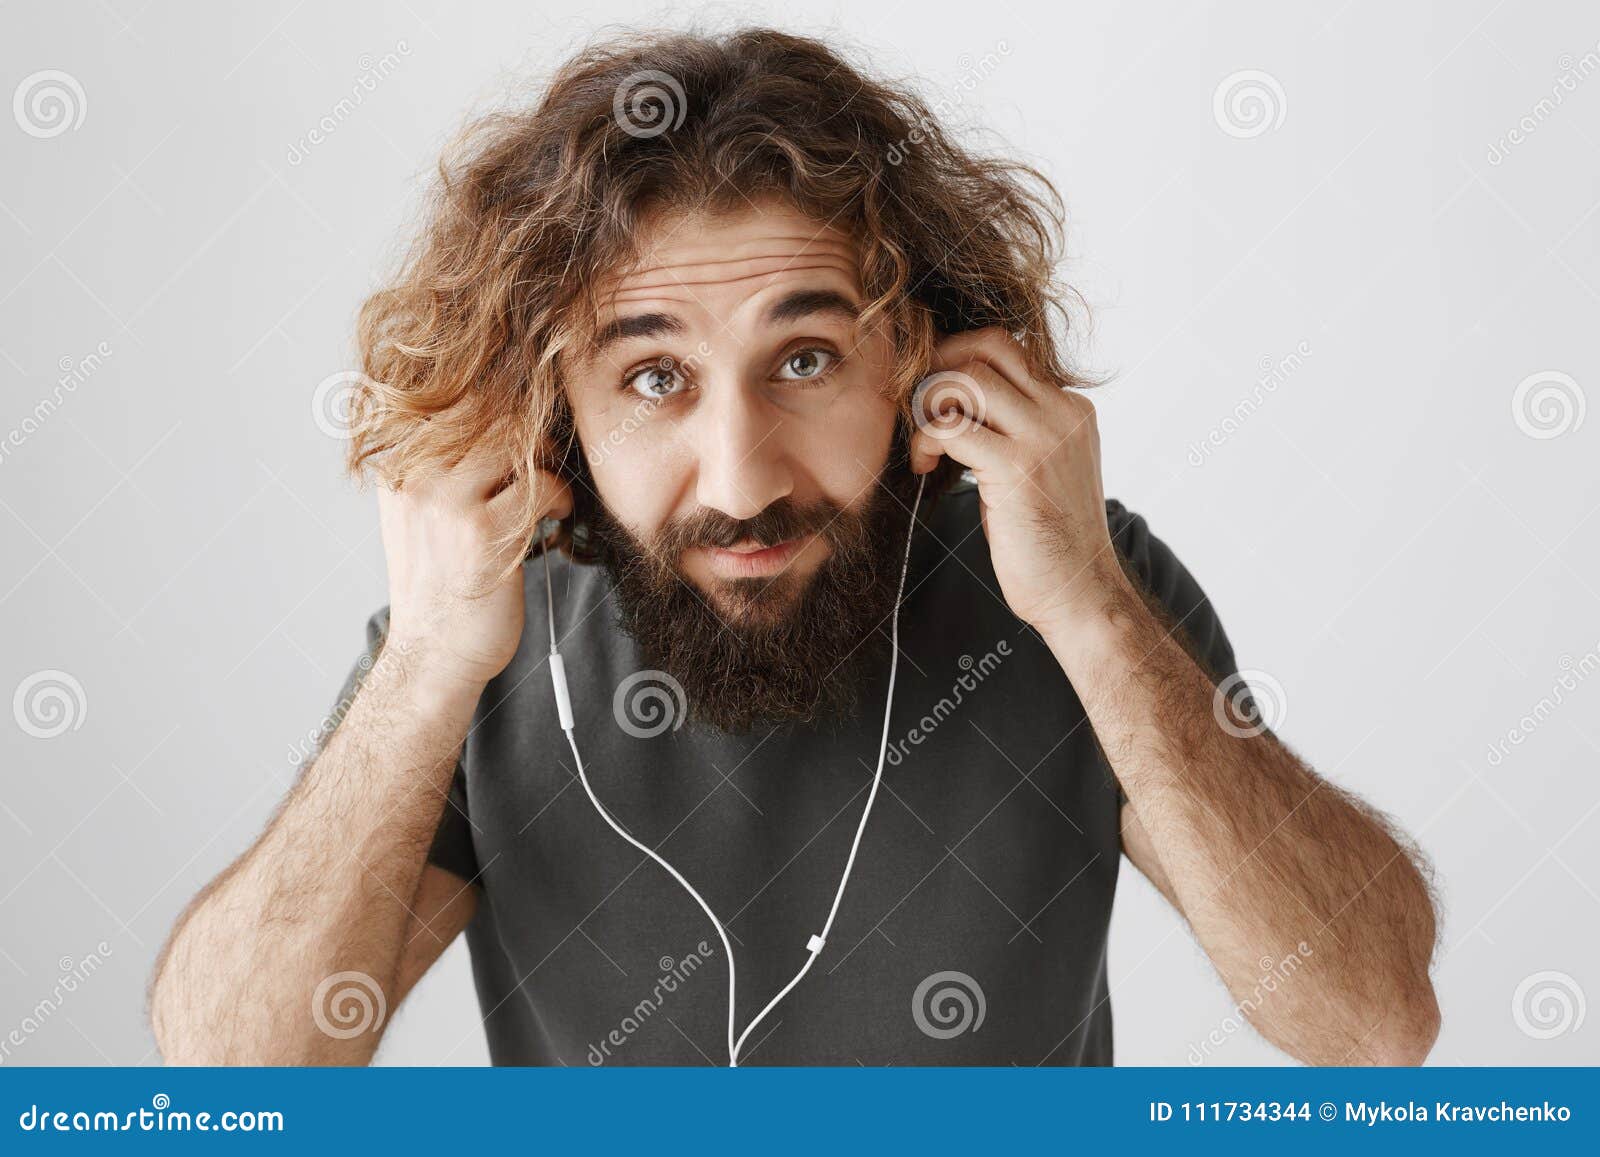 L'homme met sur des écouteurs pour aller pulser Le studio a tiré du type oriental aux cheveux bouclés beau avec la musique de écoute de barbe dans des écouteurs, regardant de dessous le front, n'ayant aucun indice quelle amie dit Concept de technologie